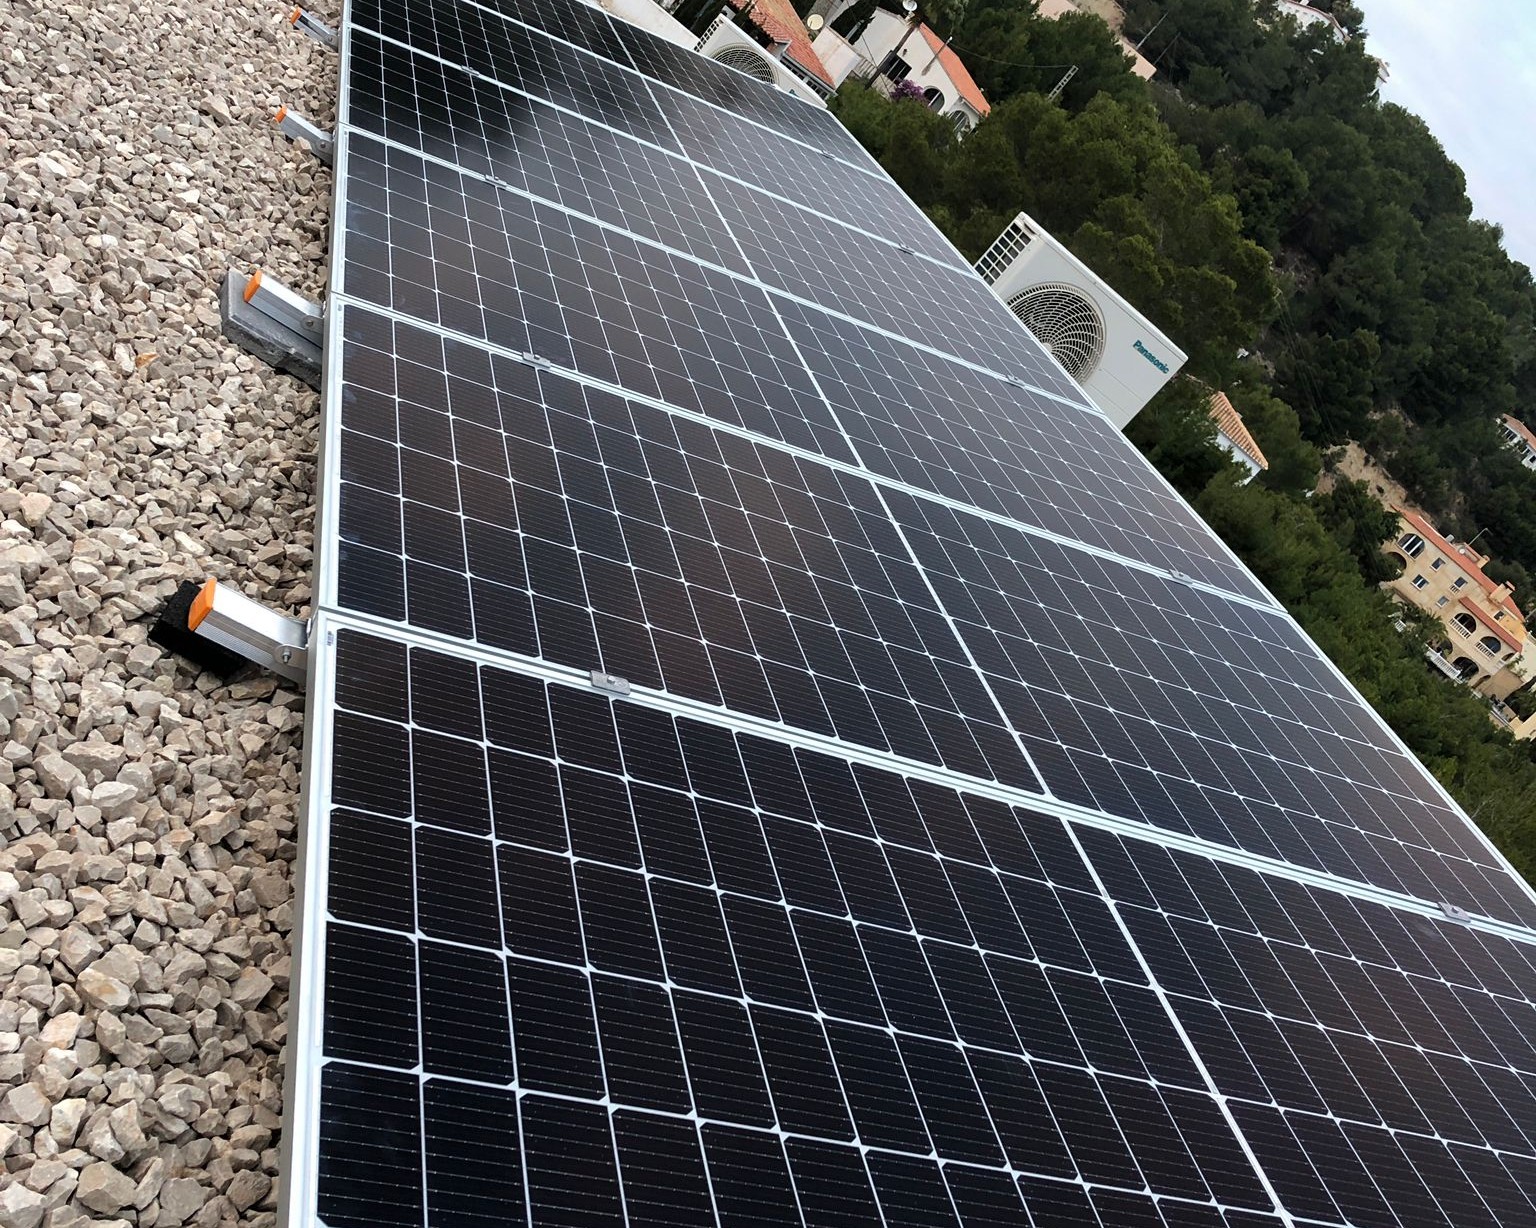 15X 455 wp Paneles Solares, Calpe, Alicante (Sistema híbrido)